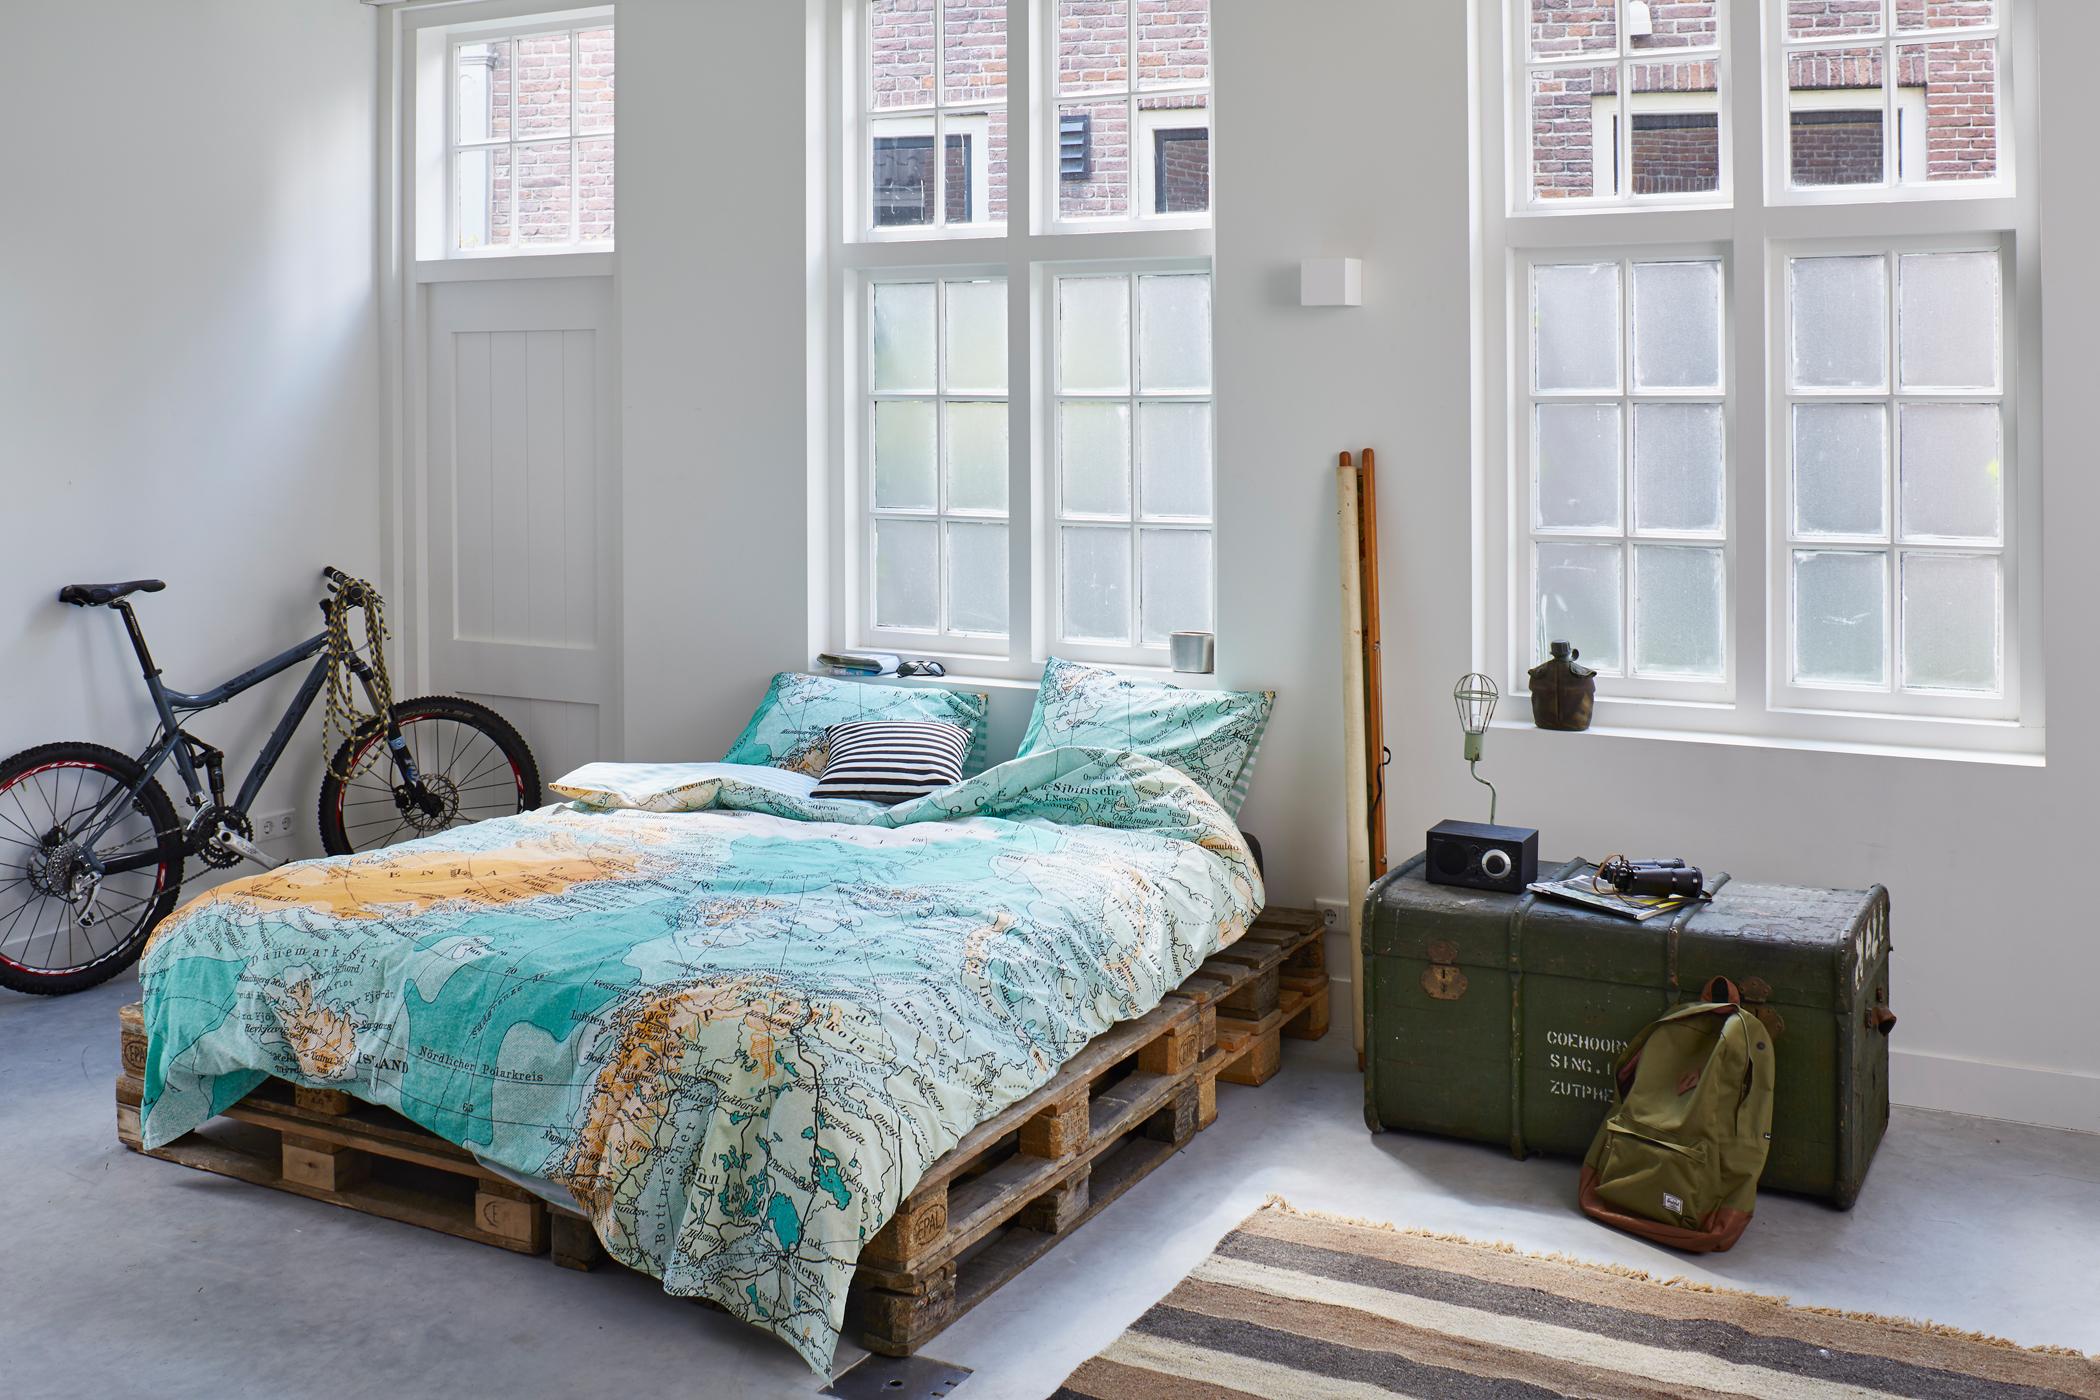 Schlafzimmer im Industrielook #bett #bettwäsche #palettenbett #palettenmöbel #zimmergestaltung ©Essenza Home/Covers&Co